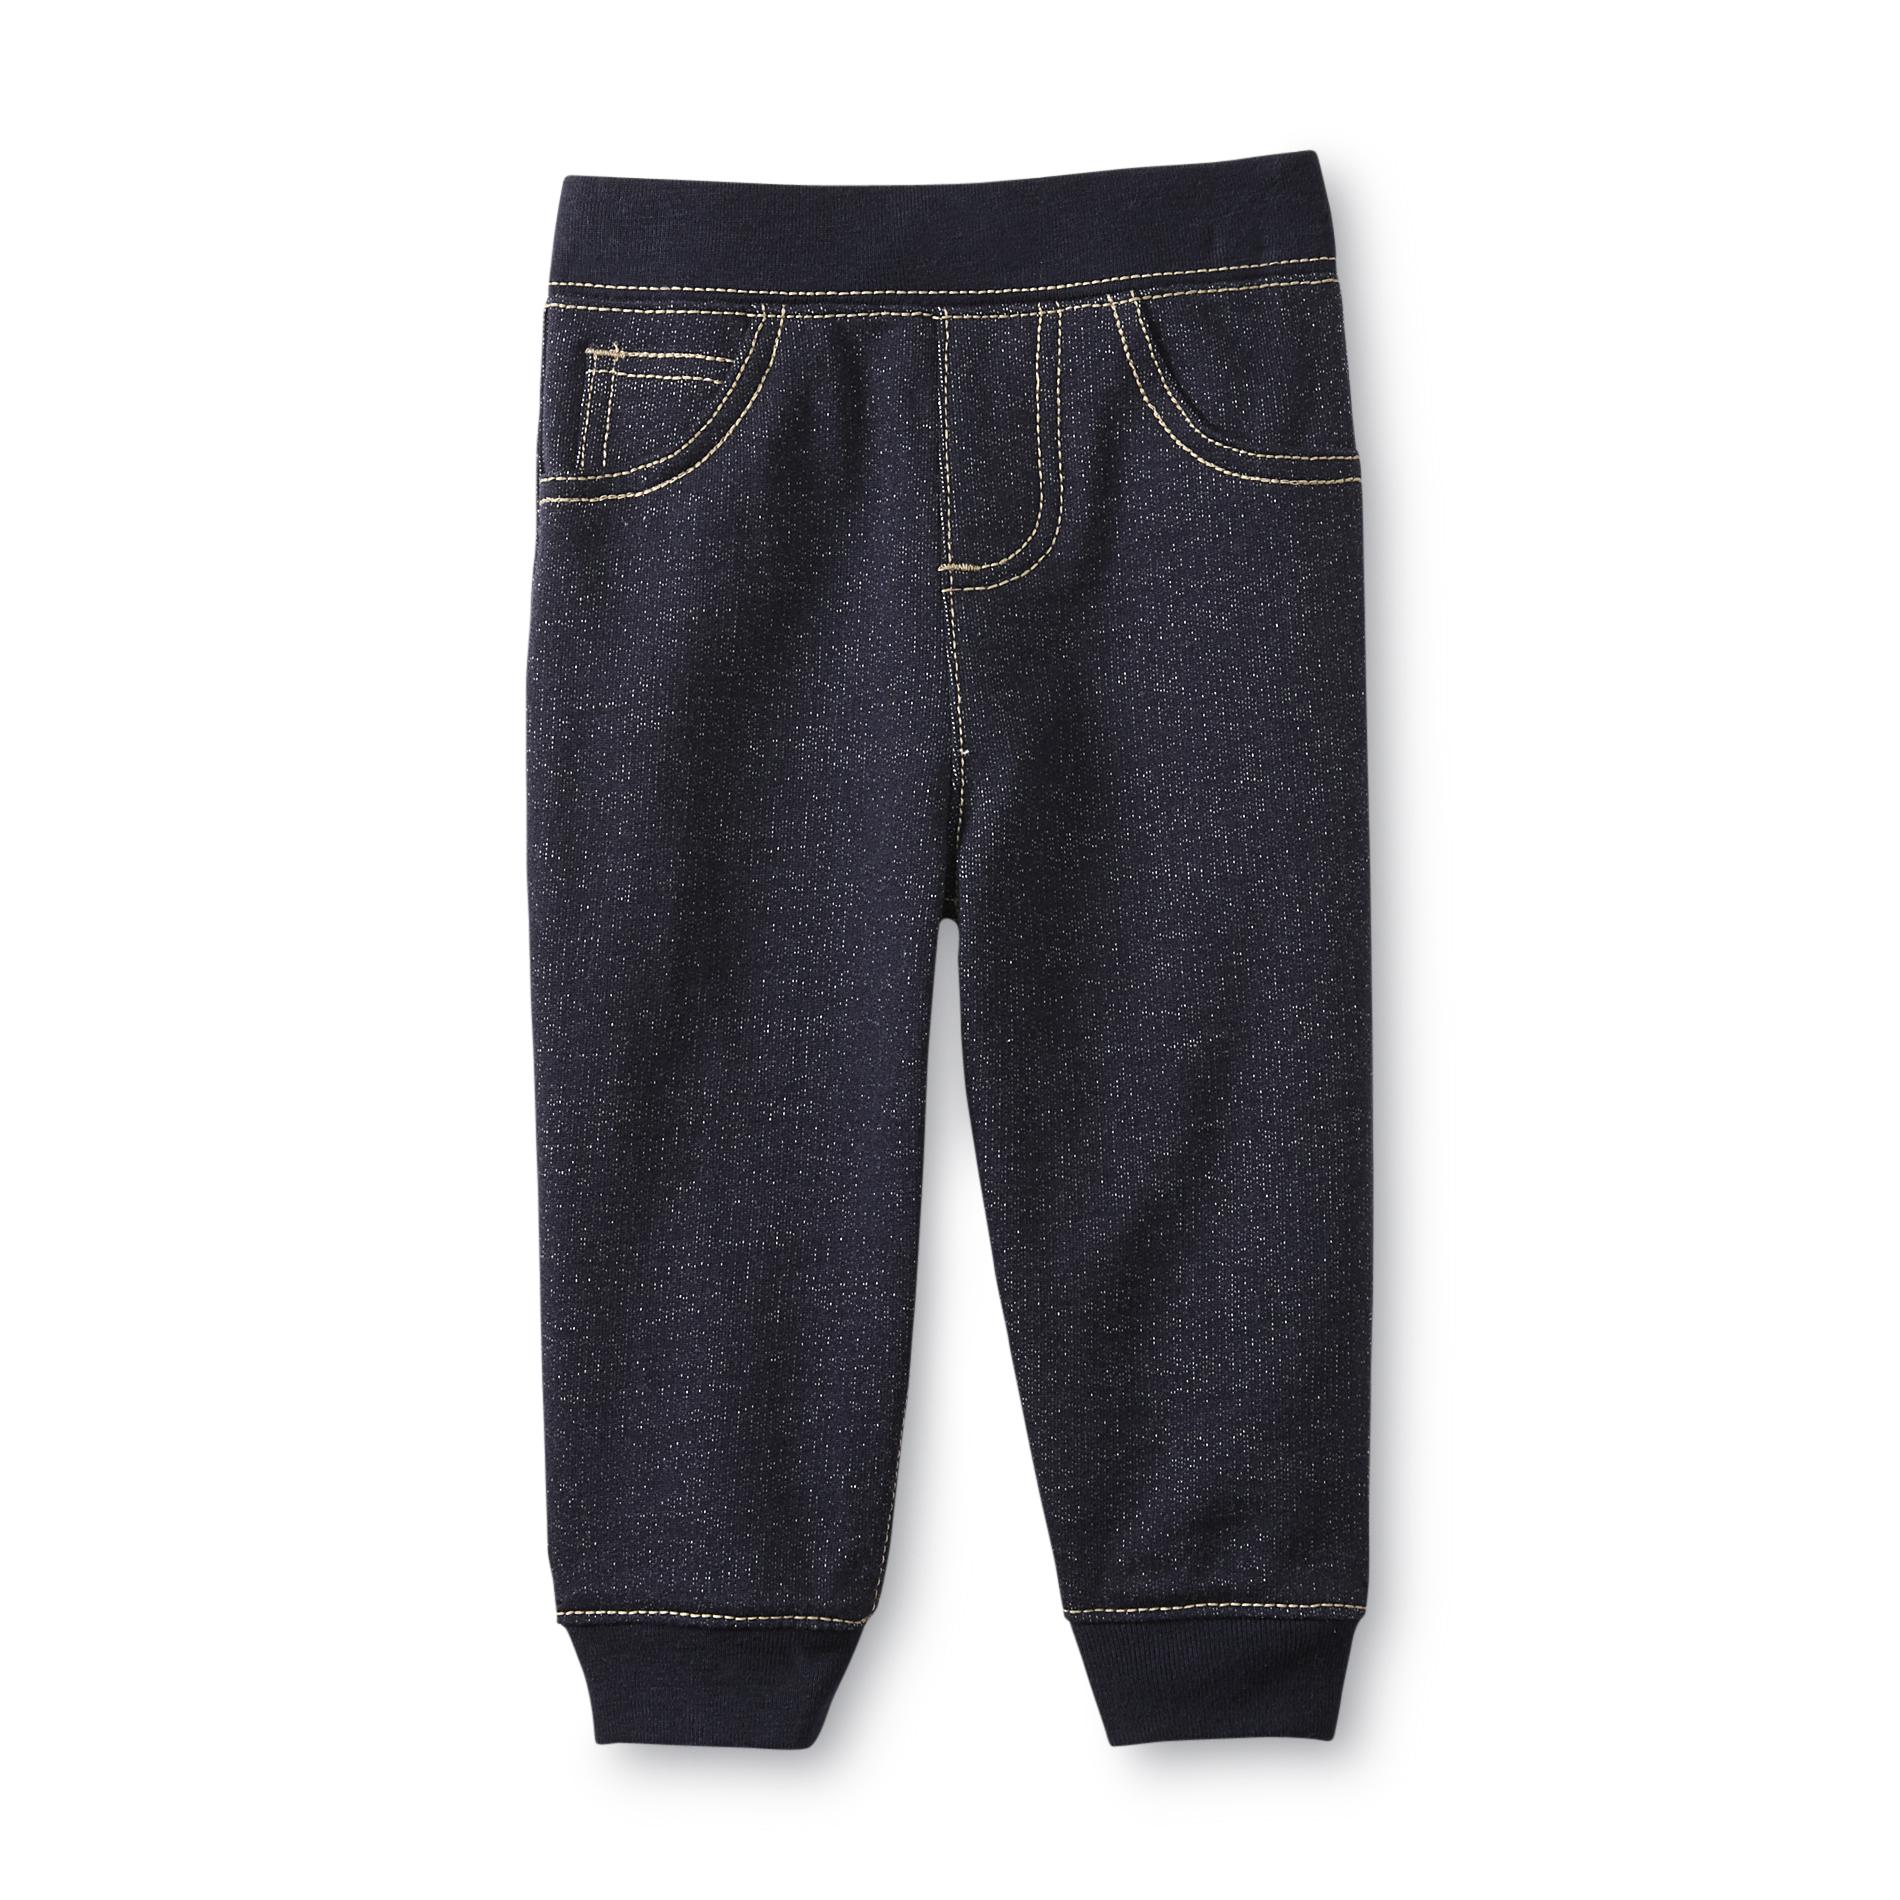 Small Wonders Newborn Boy's Denim-Look Knit Pants